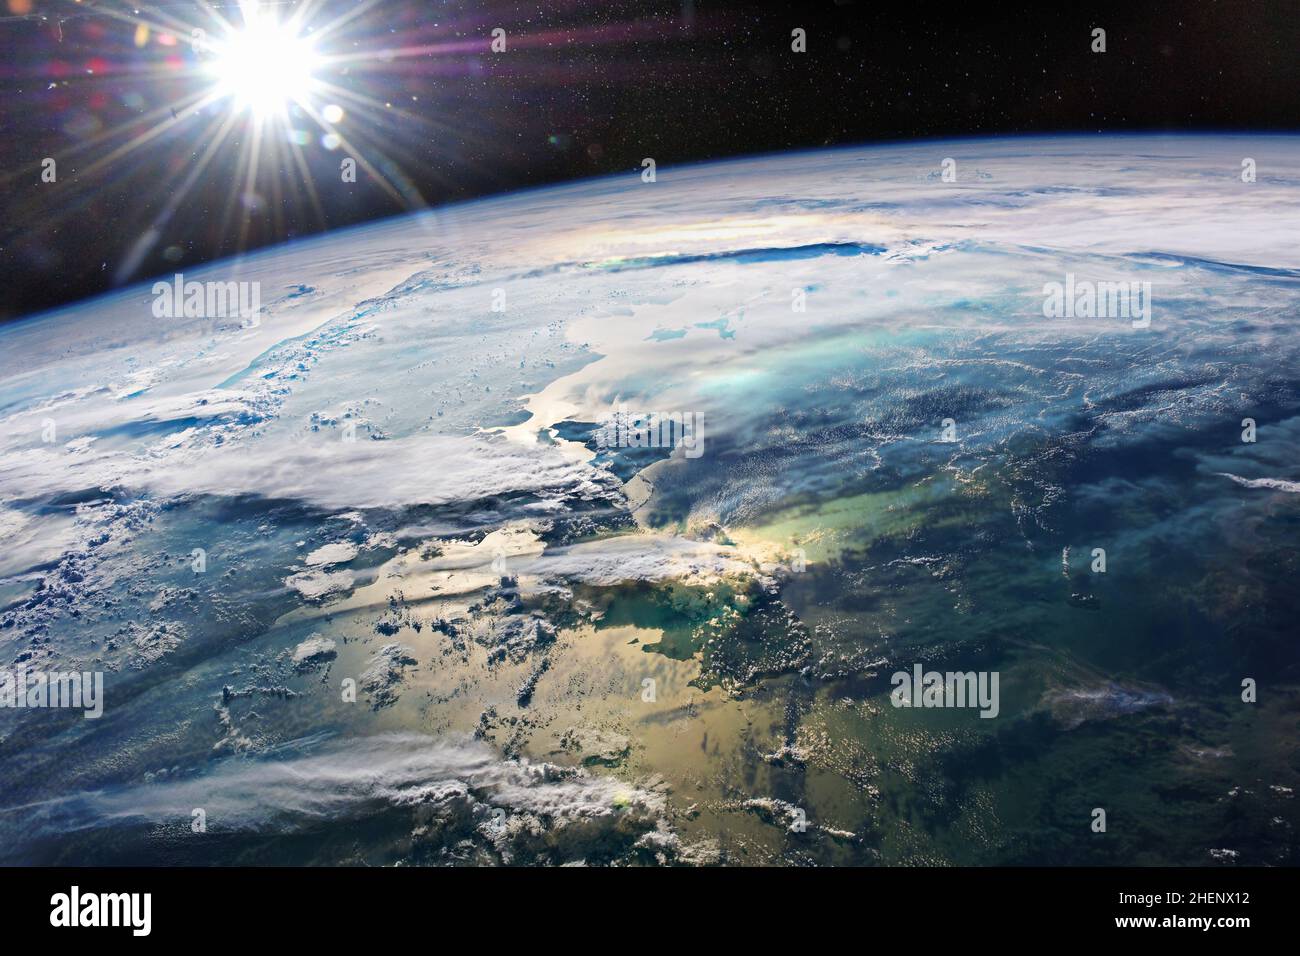 La bellezza del nostro pianeta Terra. Alba sopra il mare e le nuvole. Elementi di questa immagine forniti dalla NASA. Foto Stock